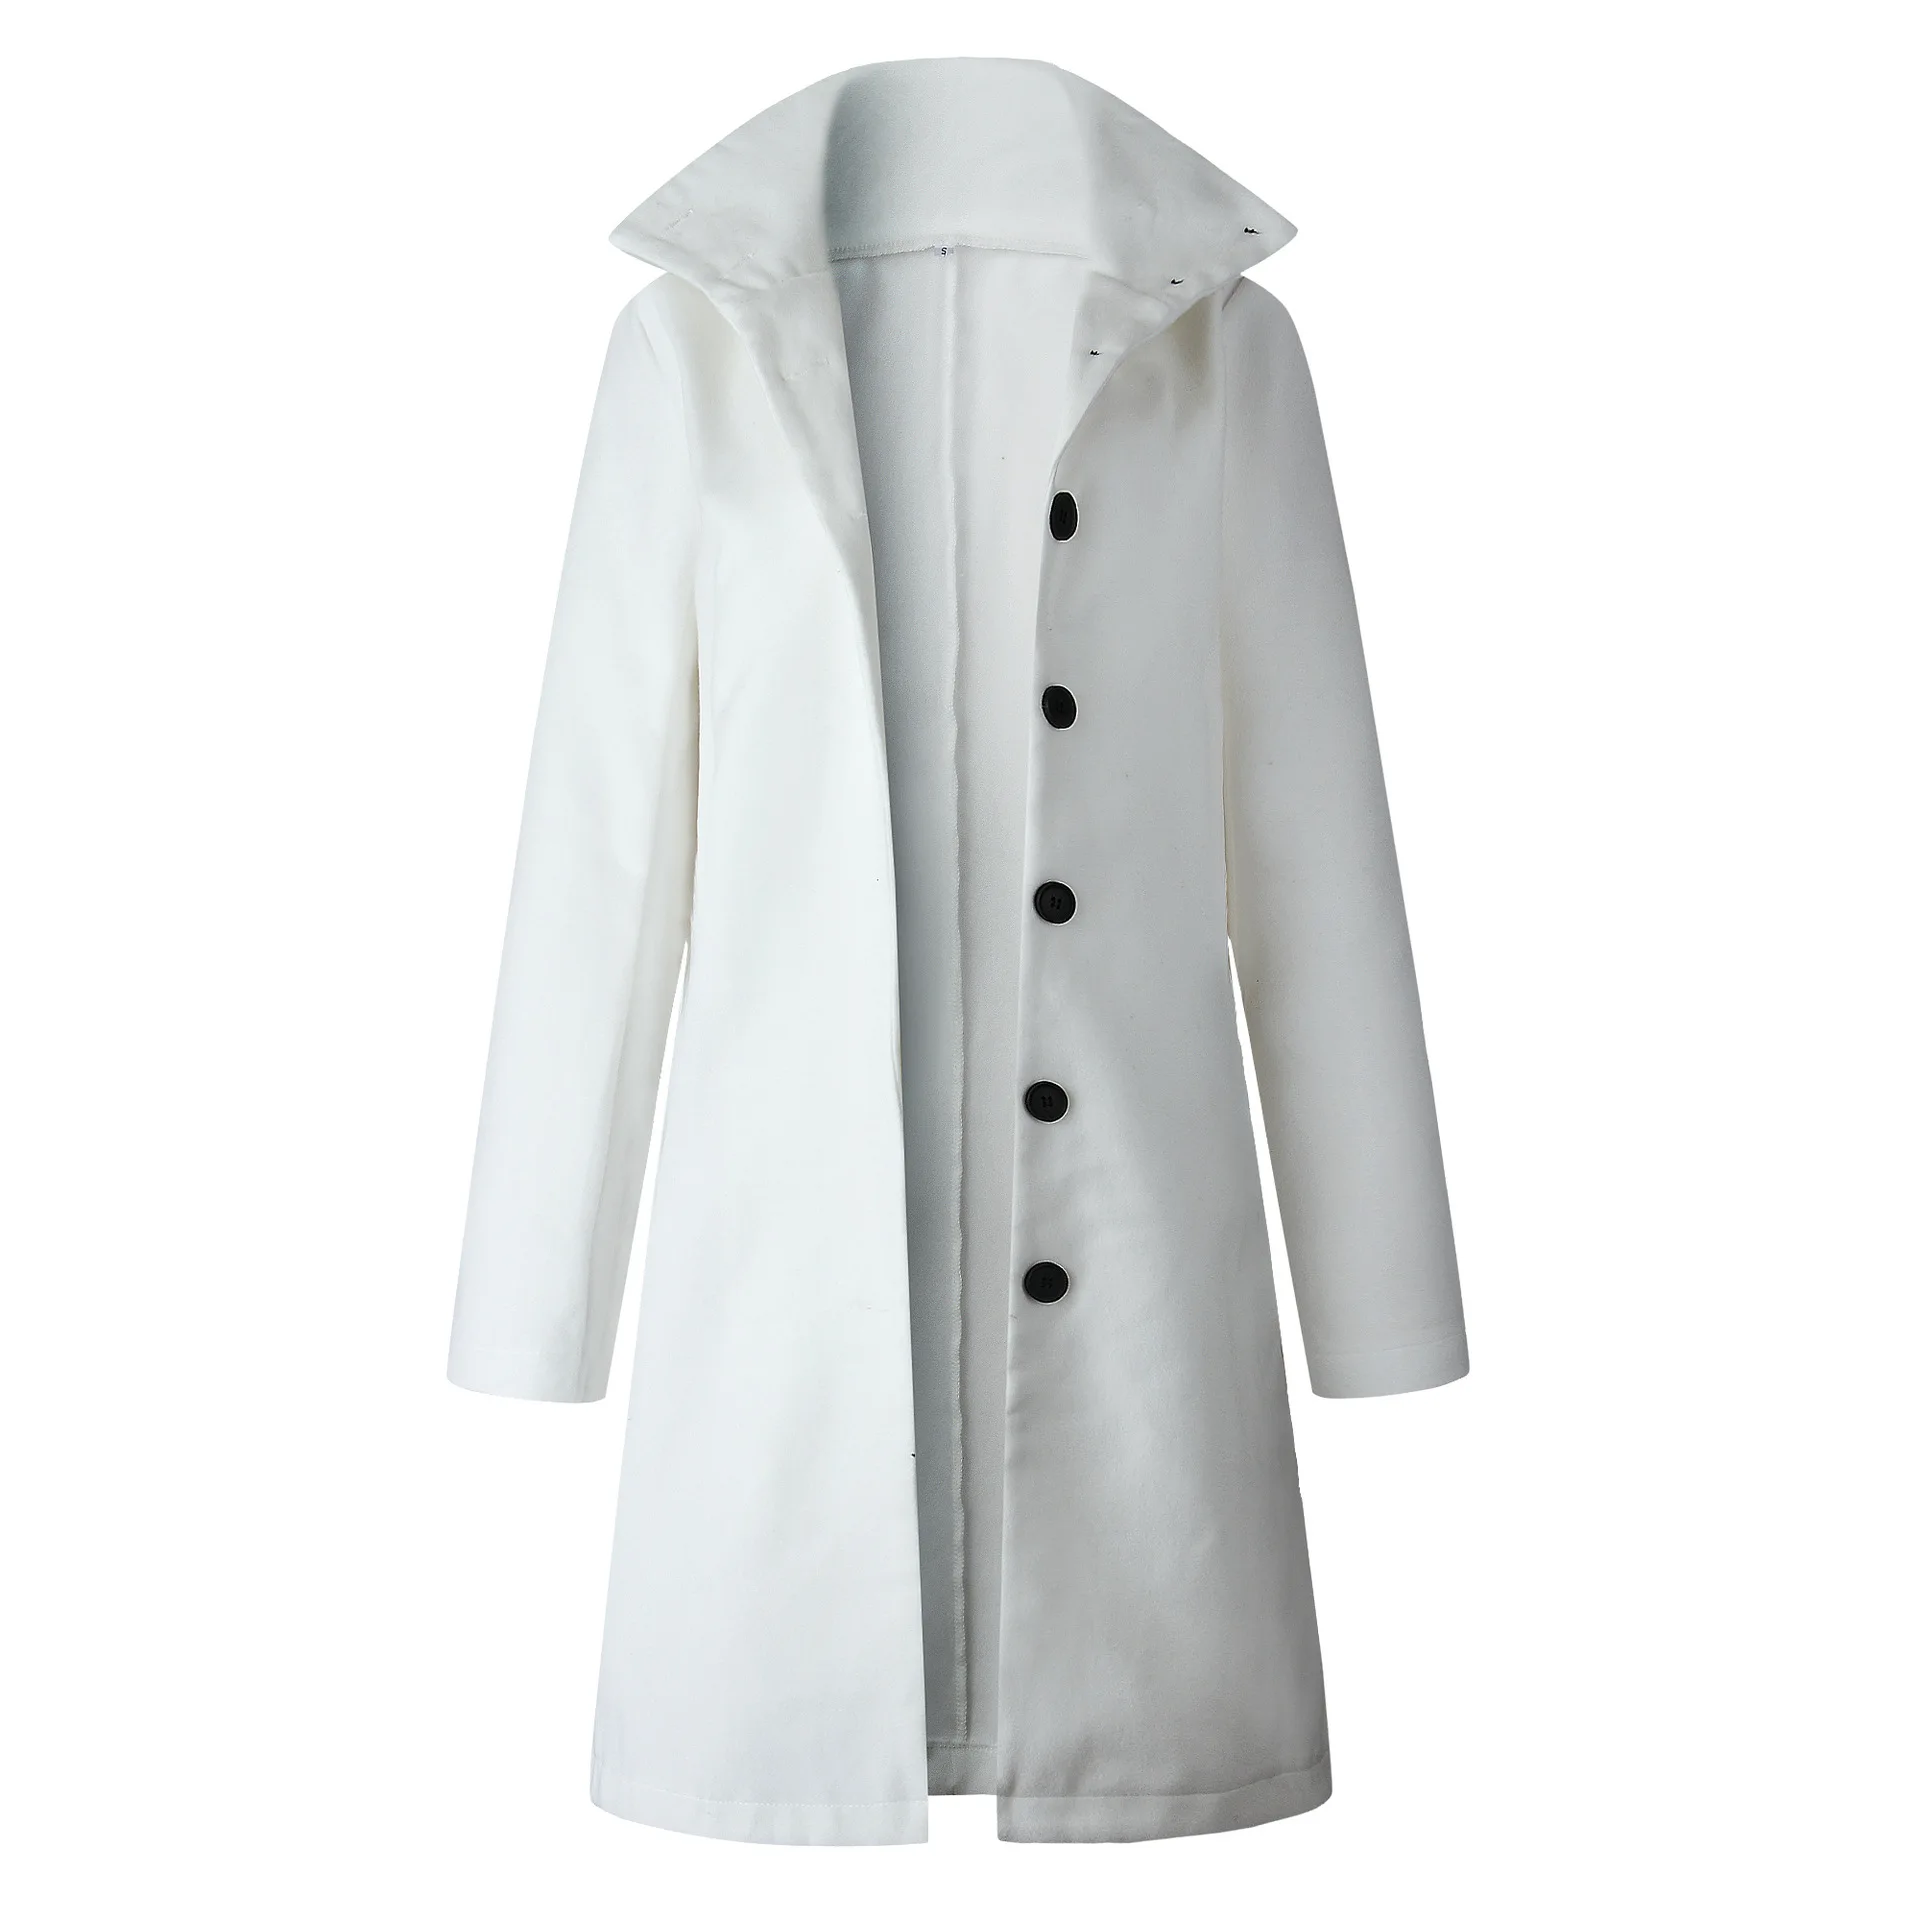 Женское шерстяное пальто на одной пуговице с карманами, кардиган, куртка плюс, длинная, Минималистичная, элегантная, с длинным рукавом, облегающая, для офиса, леди, наряды - Цвет: Белый